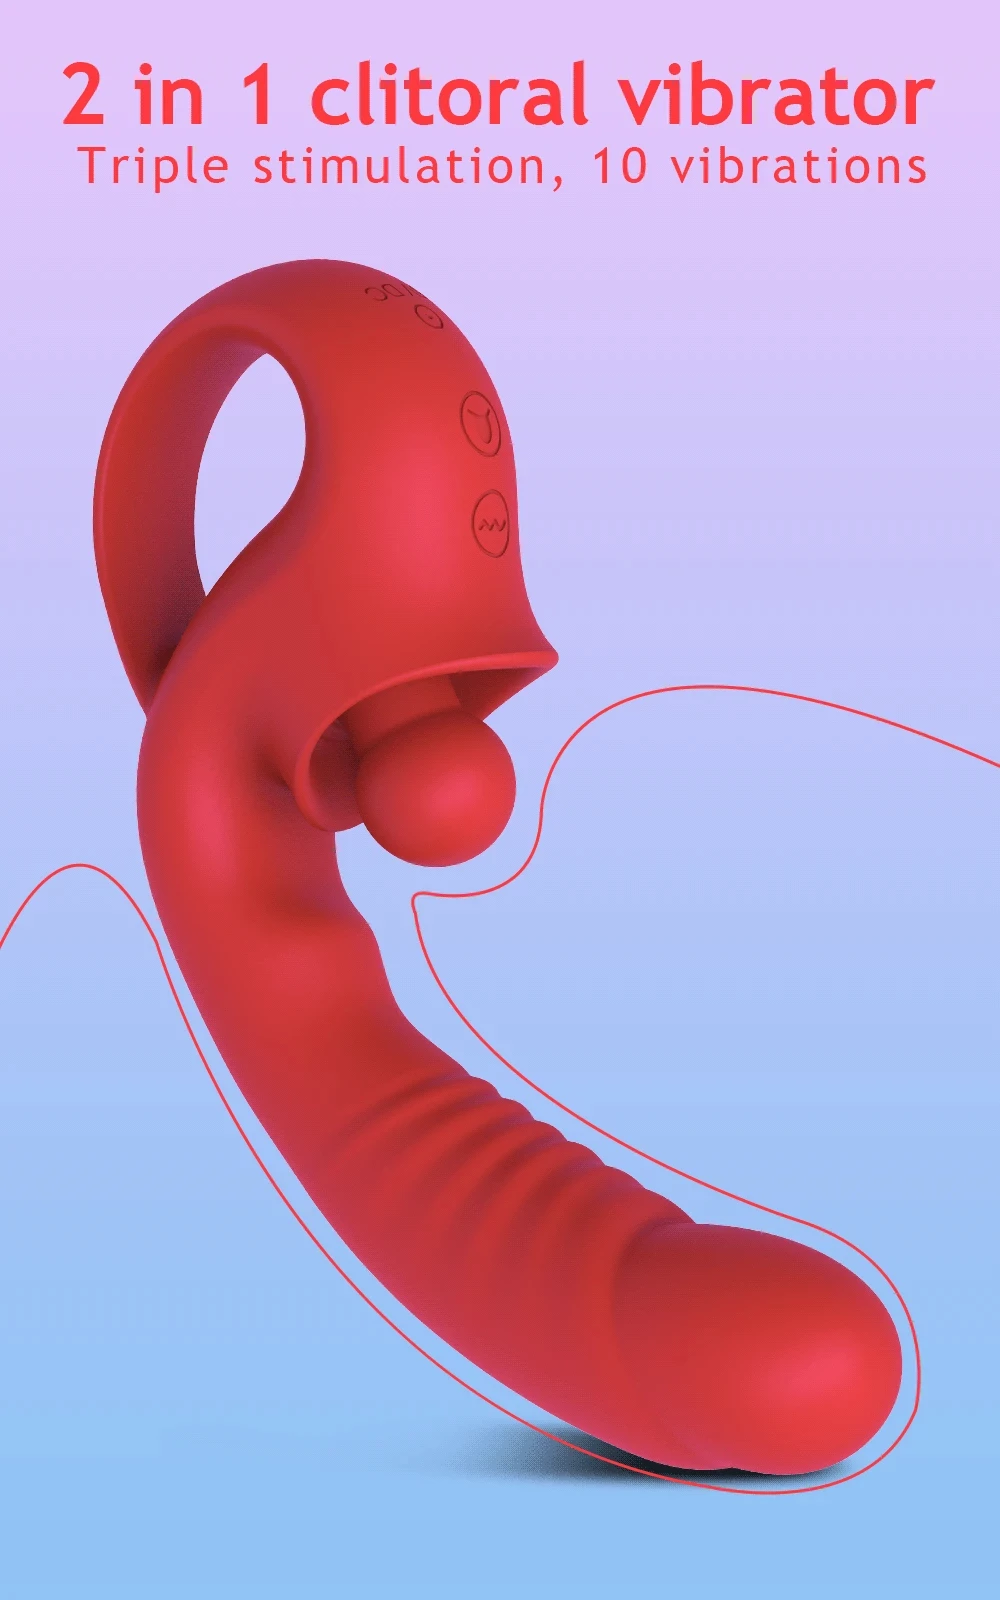 clitoral licking tongue vibrator